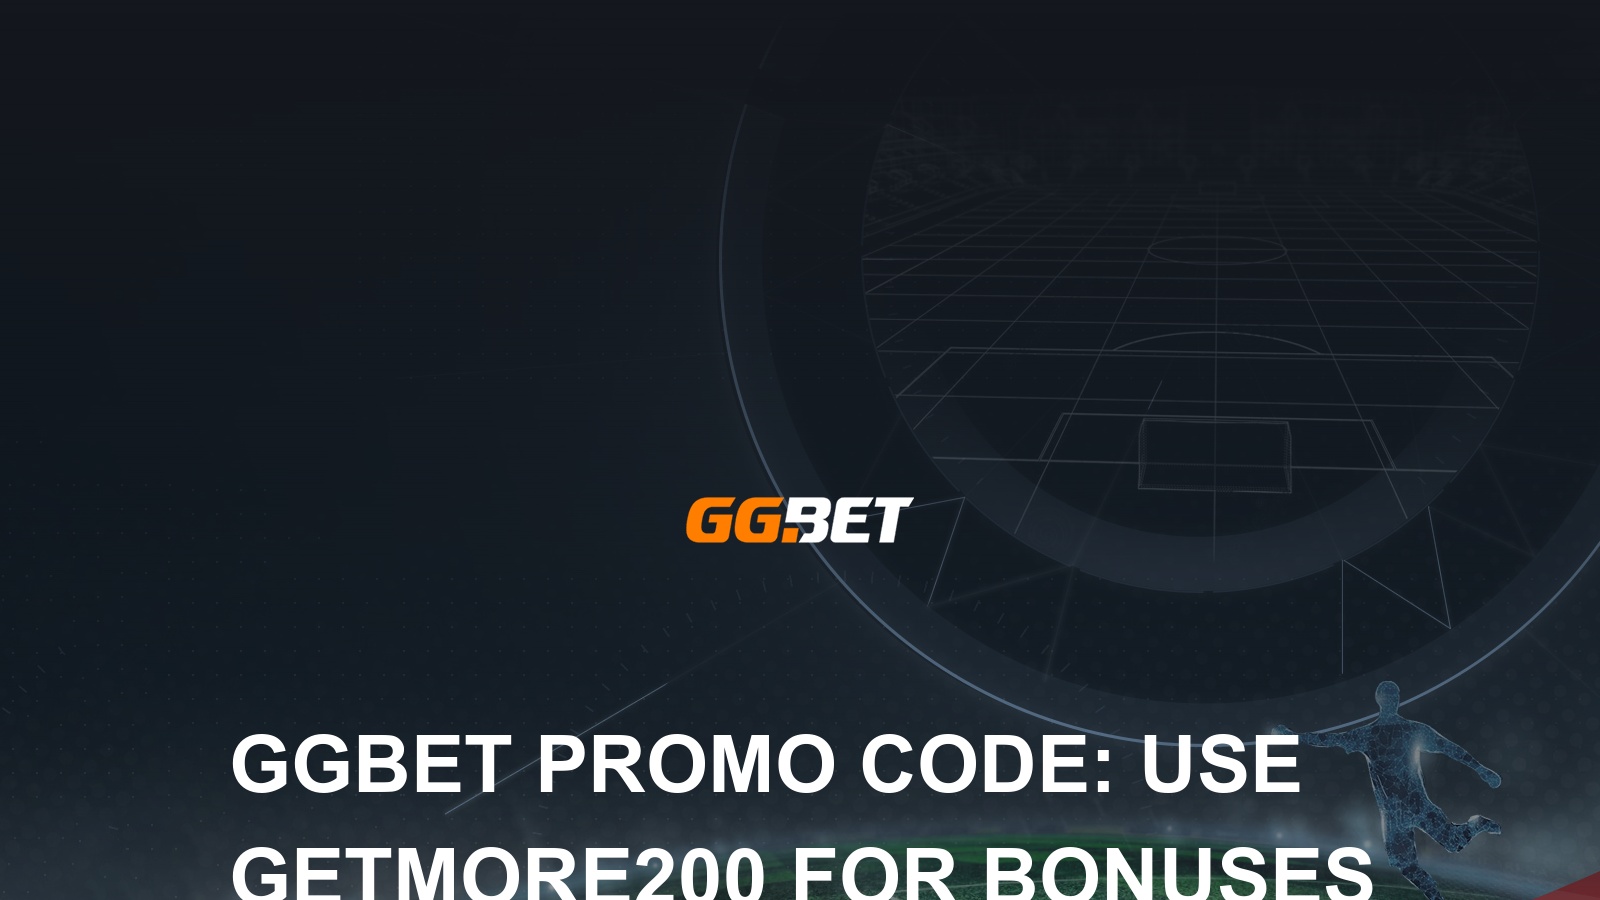 ggbet free spins code